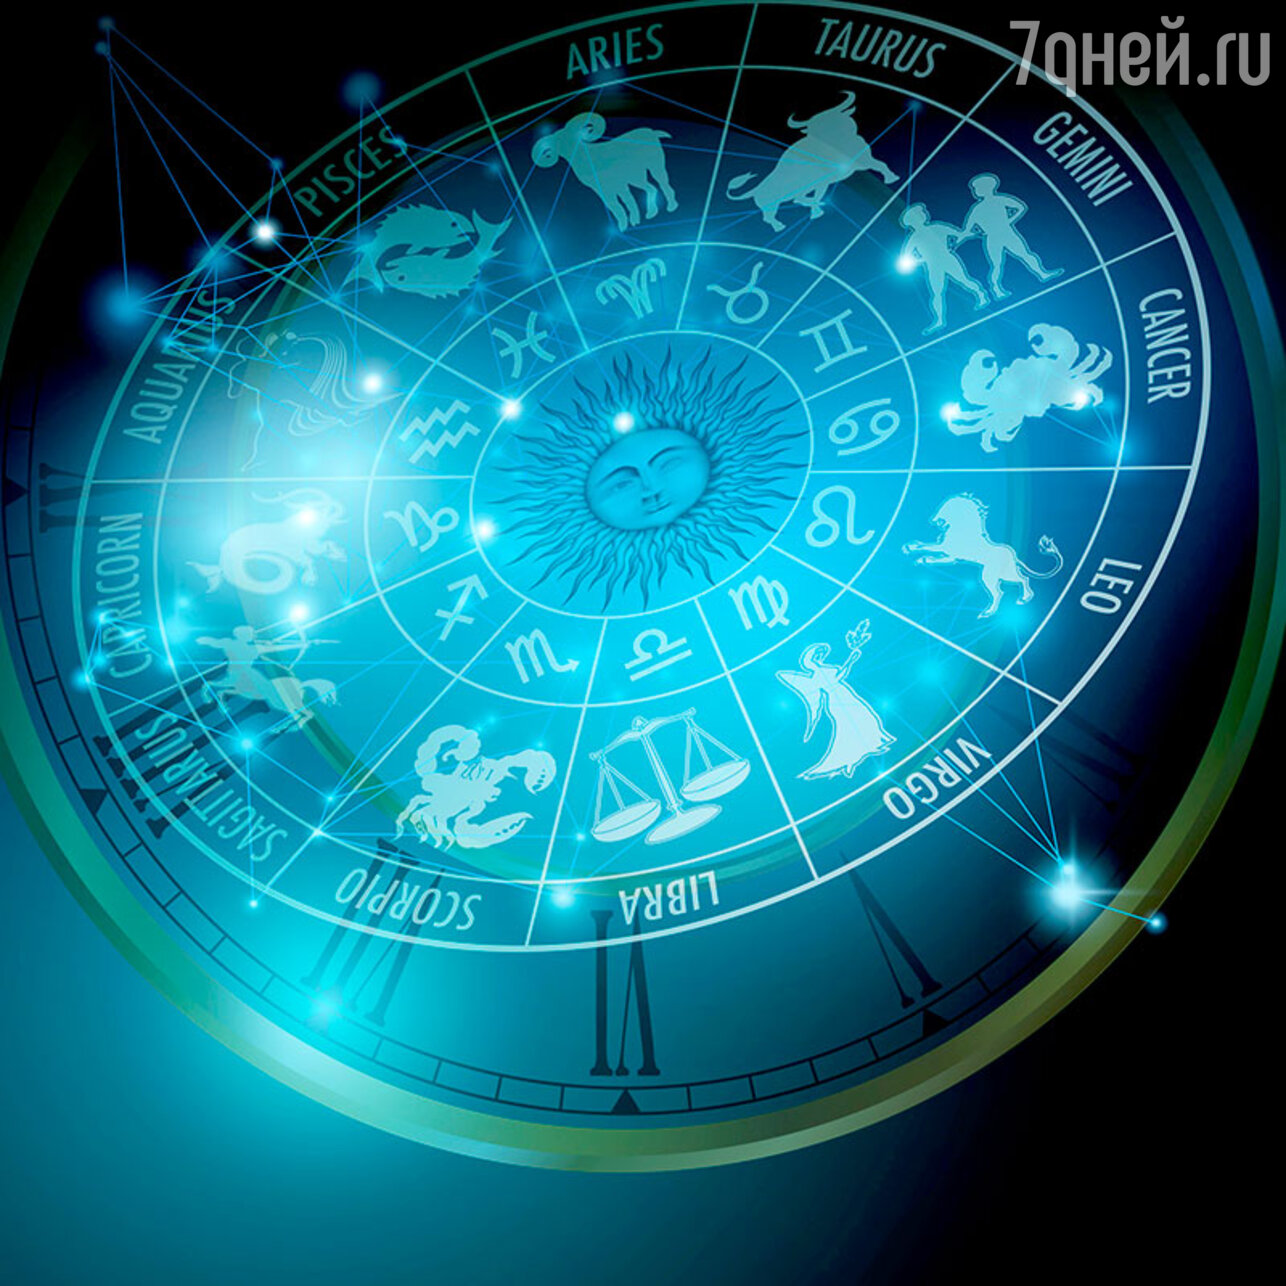 Астрологический прогноз гороскопы. Зодиакальный круг. Красивый фон астрология. Астрология иллюстрации. Астрологический гороскоп.